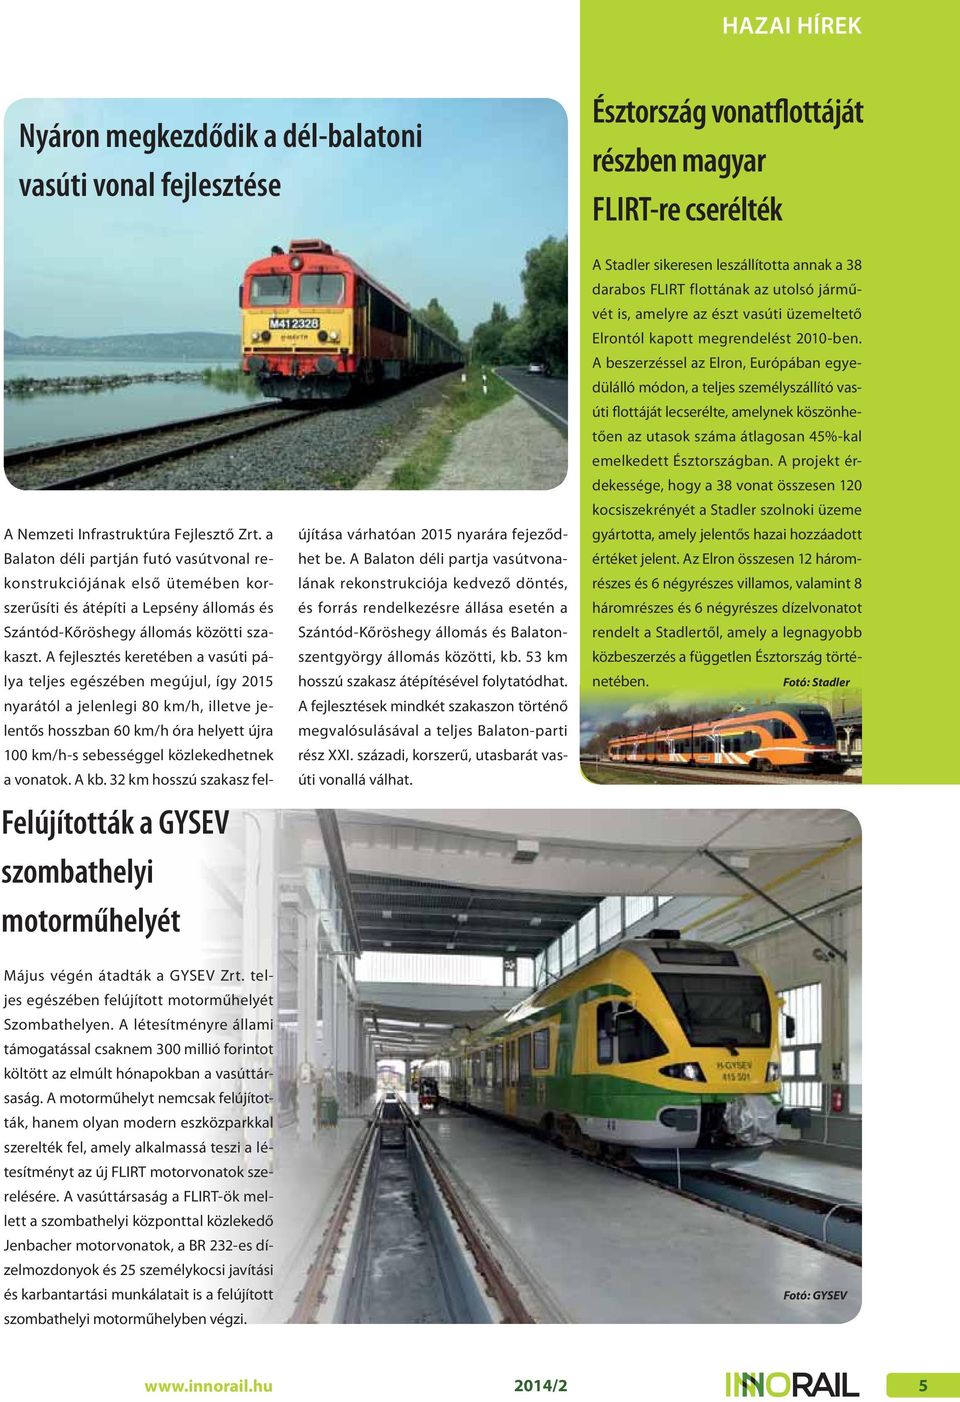 A fejlesztés keretében a vasúti pálya teljes egészében megújul, így 2015 nyarától a jelenlegi 80 km/h, illetve jelentős hosszban 60 km/h óra helyett újra 100 km/h-s sebességgel közlekedhetnek a